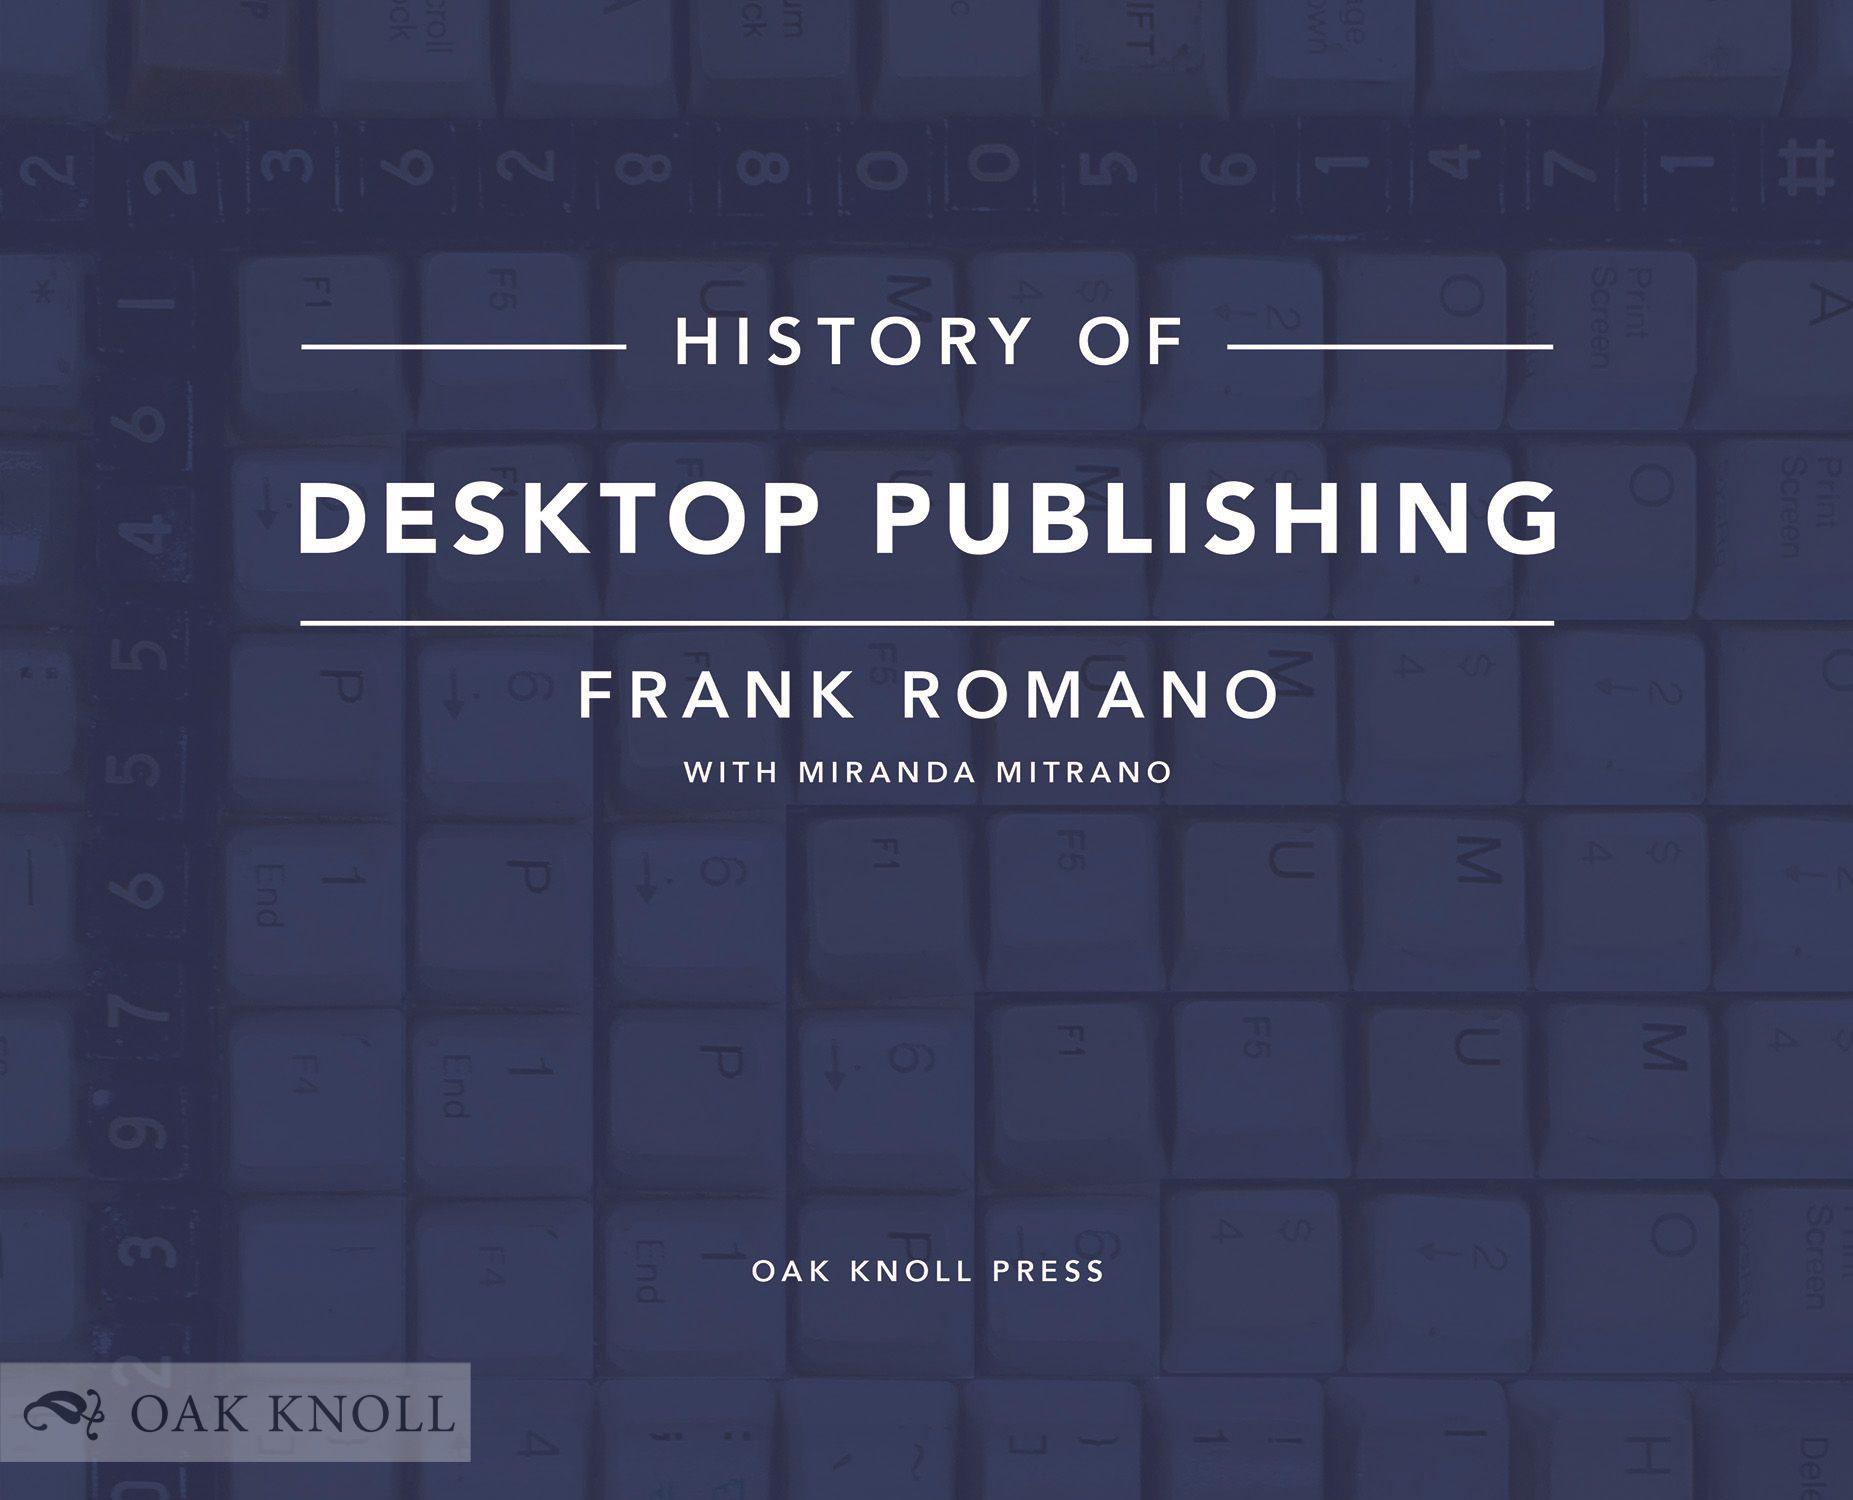 History of Desltop Publishing